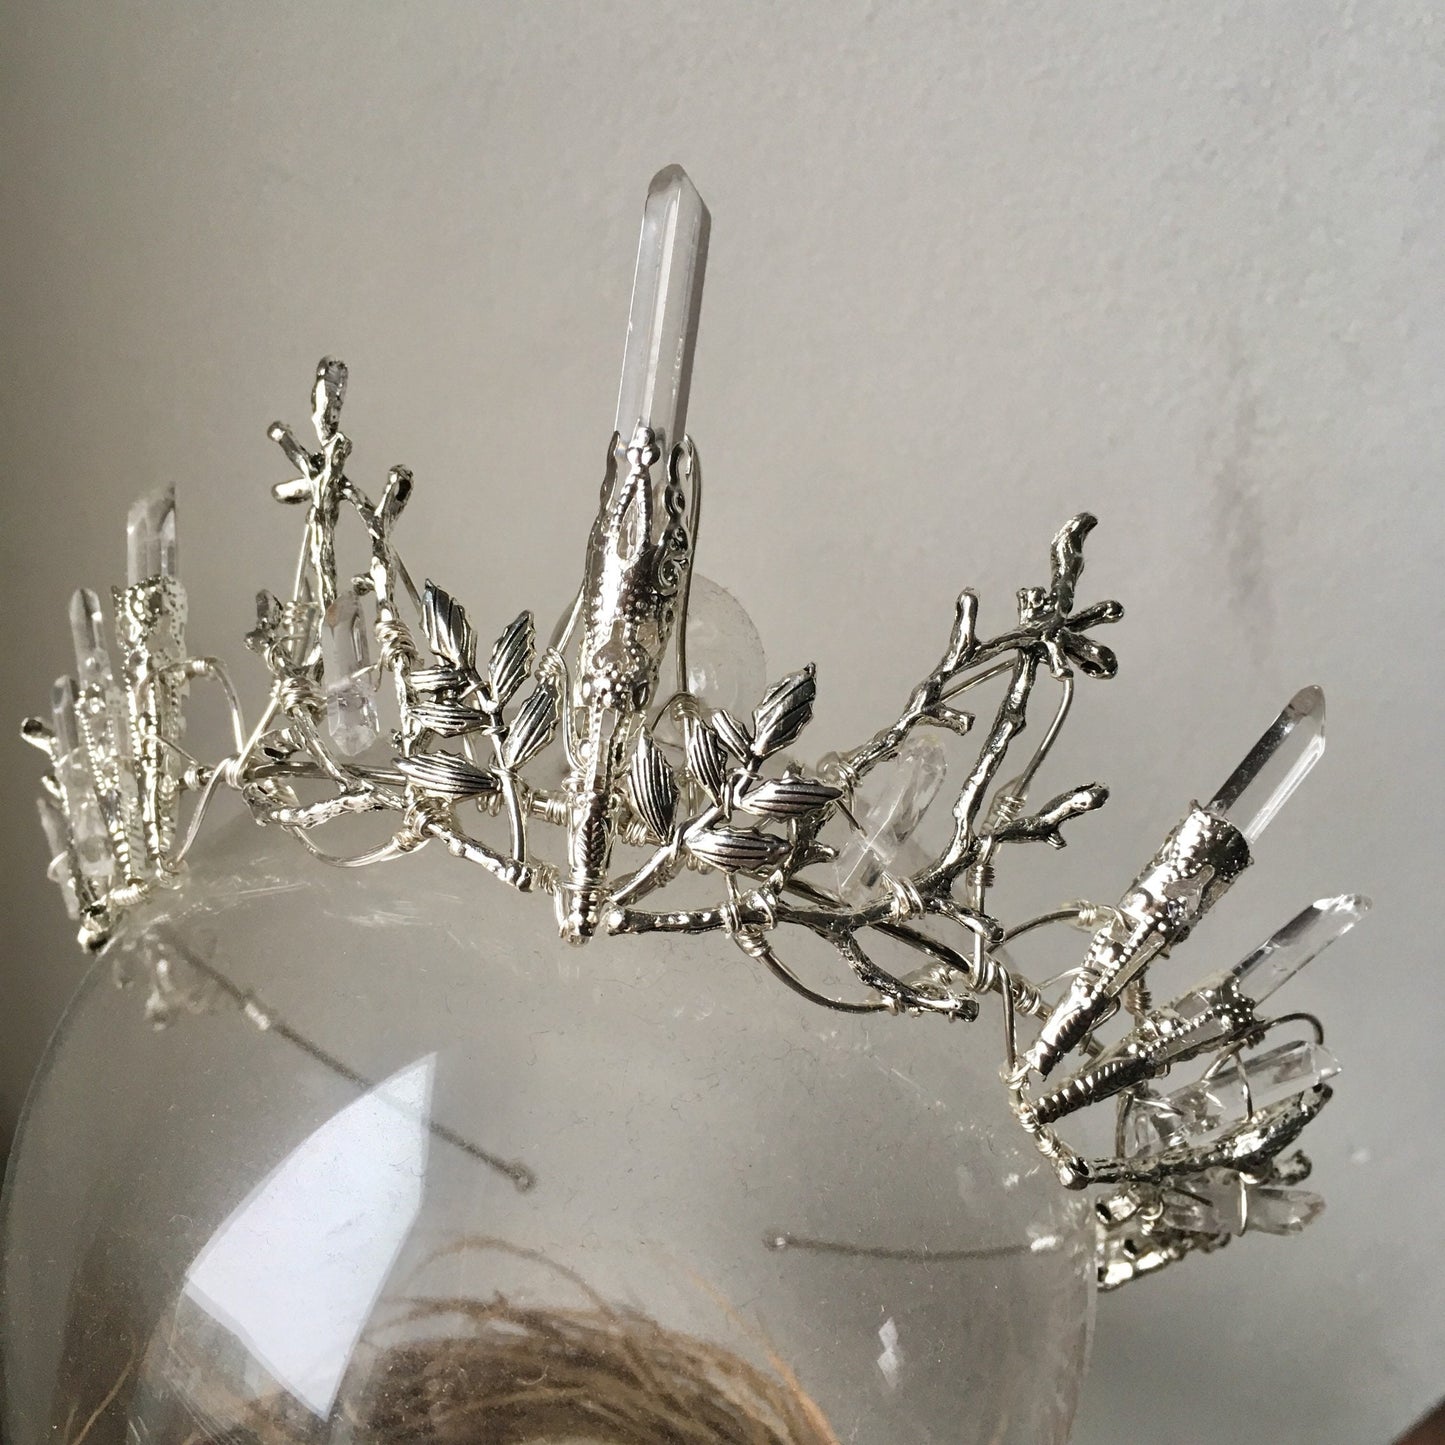 The INDIE PURE Crystal Crown